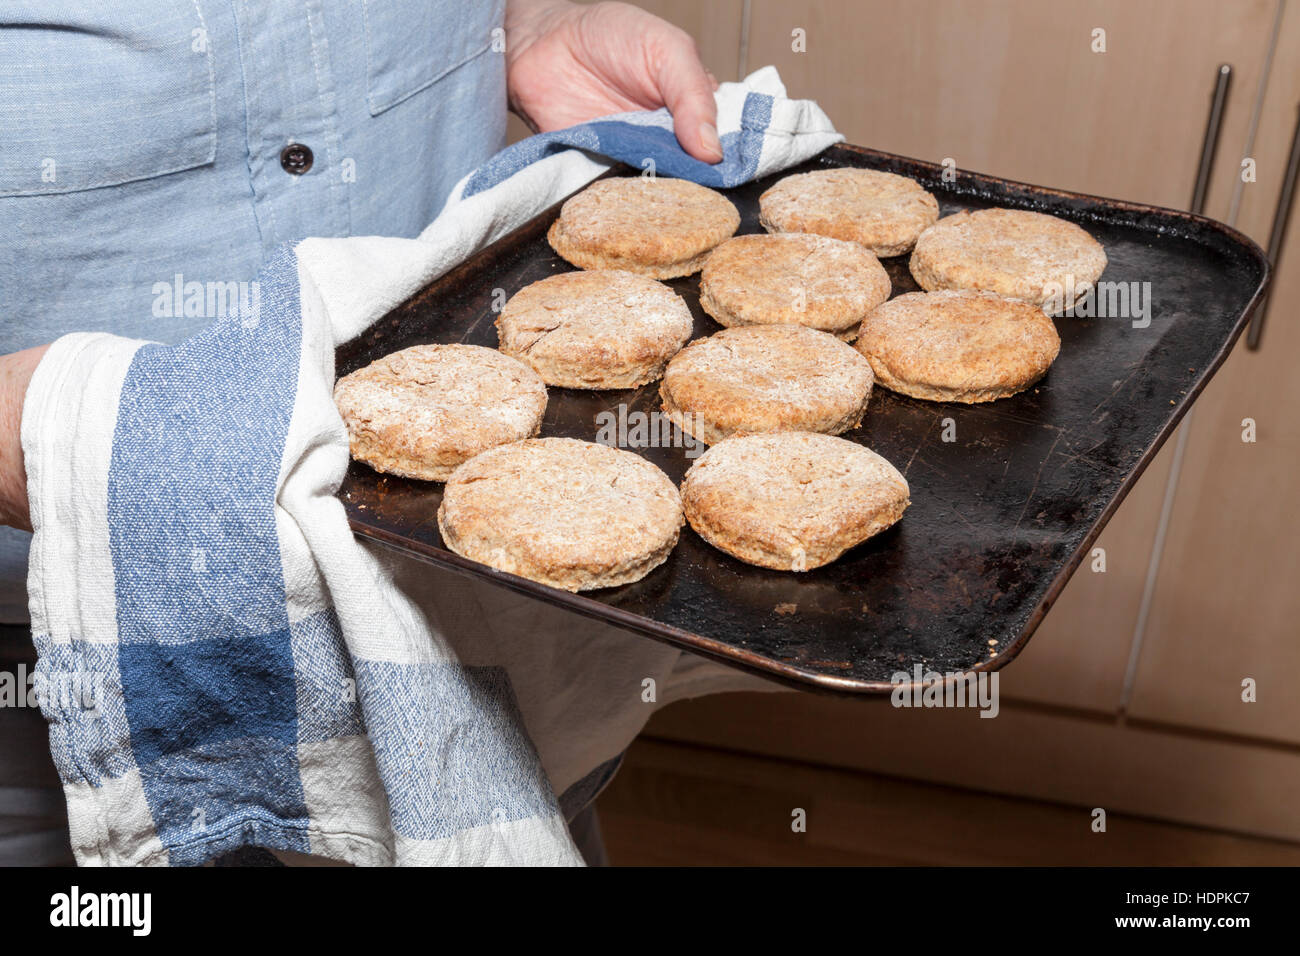 Des biscuits ou des biscuits fait maison sur une plaque de cuisson juste pris du four Banque D'Images